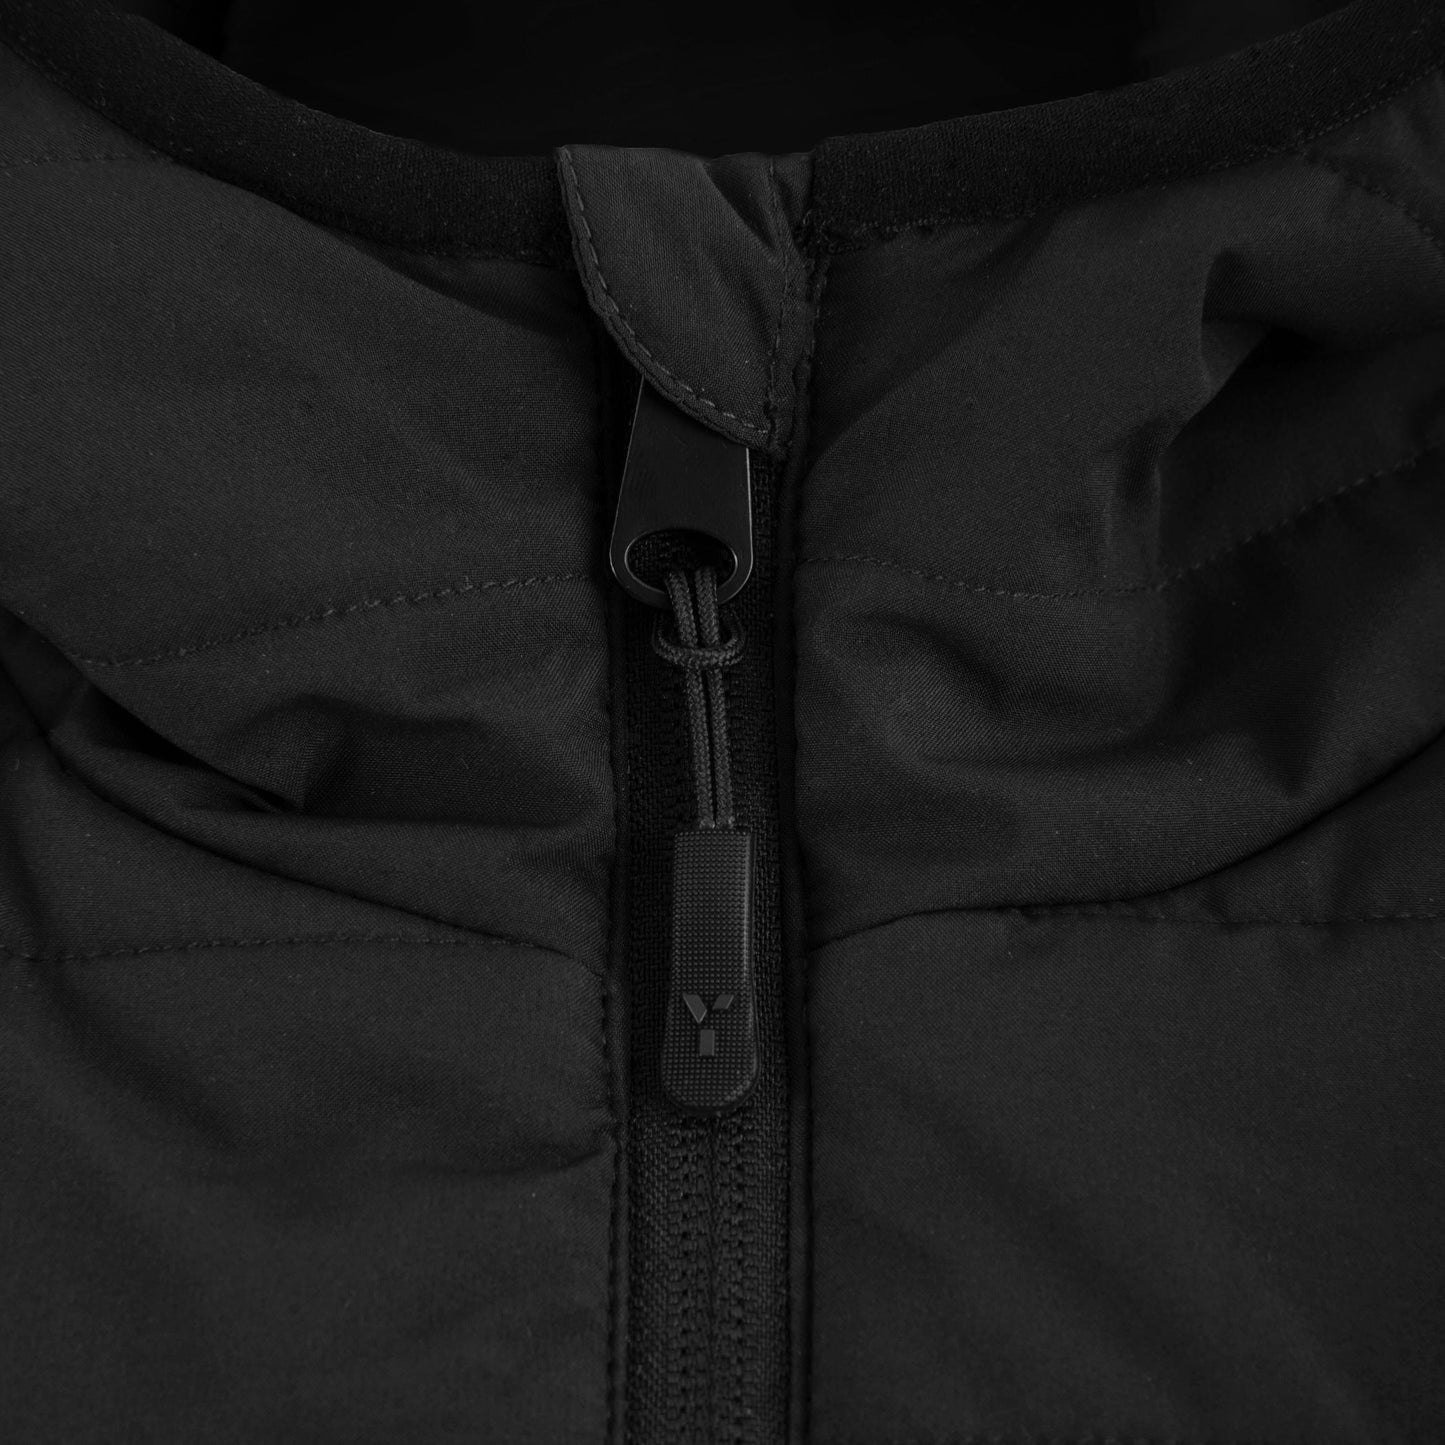 Truro HC - Padded Jacket Unisex Black